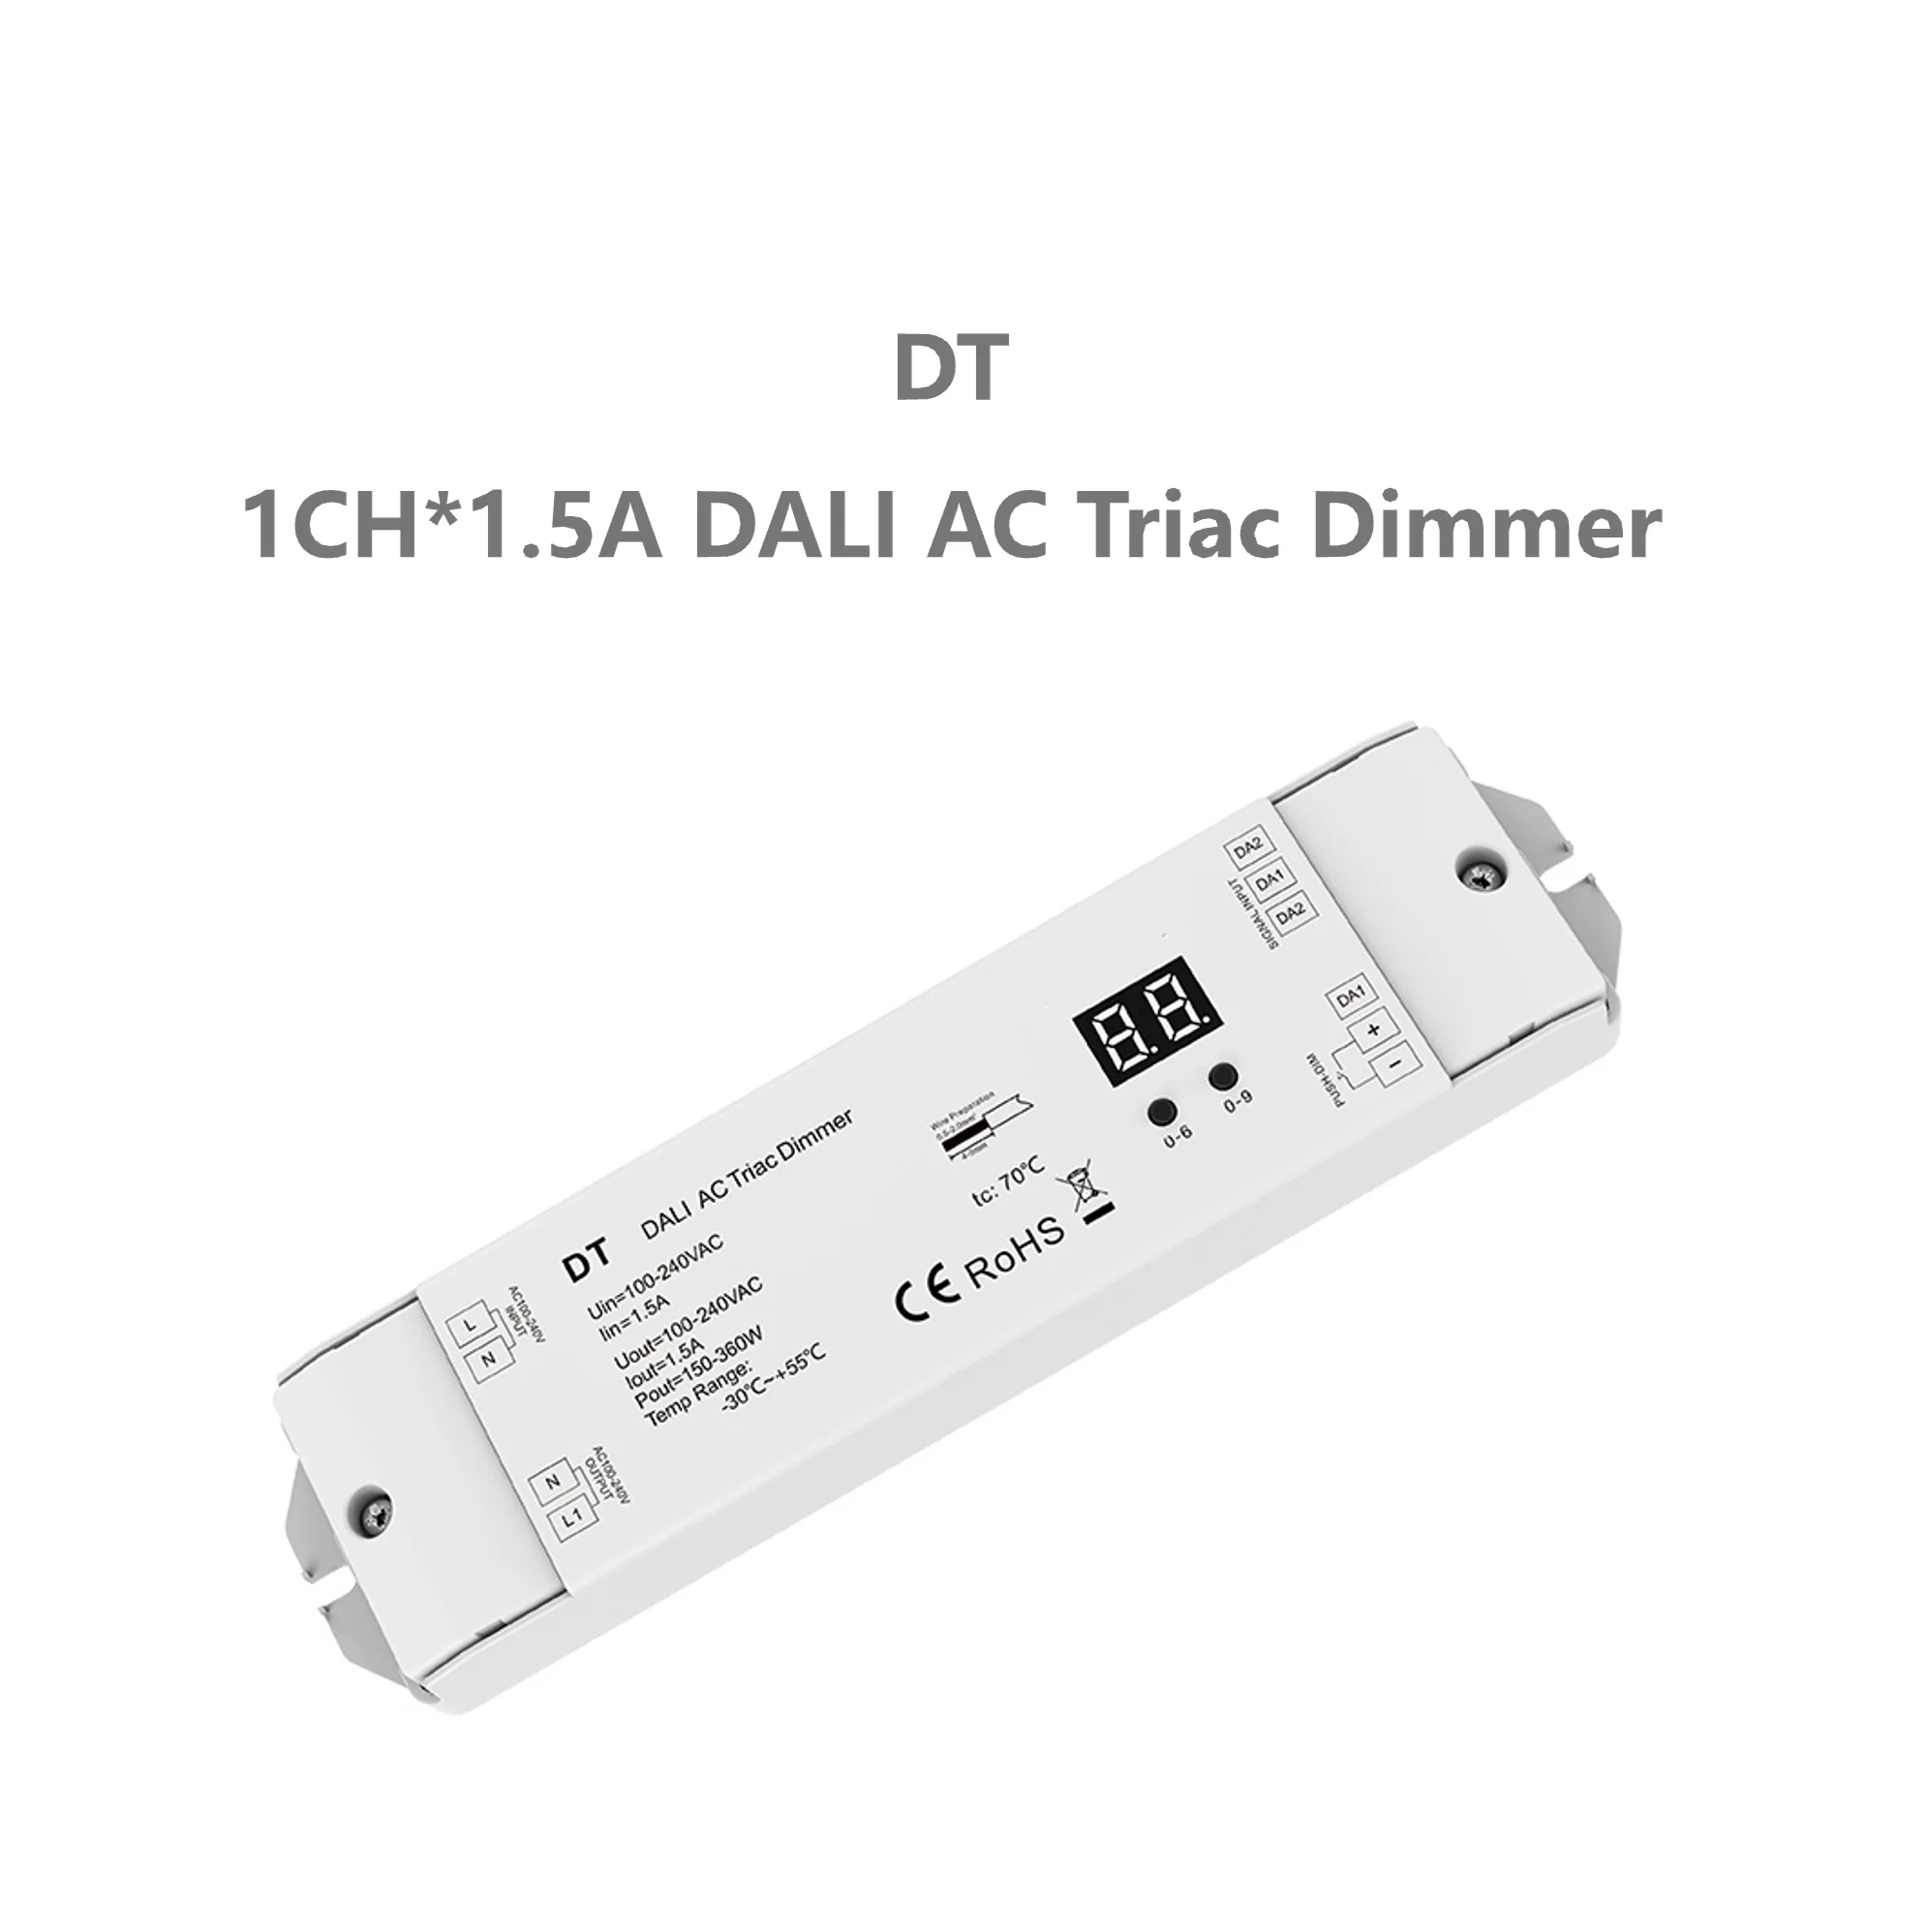 

SkyDance DT 1CH*1.5A AC Triac DALI Dimmer 150-360W 100-240VAC 1 Channel Output Leading Edge or Trailing Edge Numeric Display